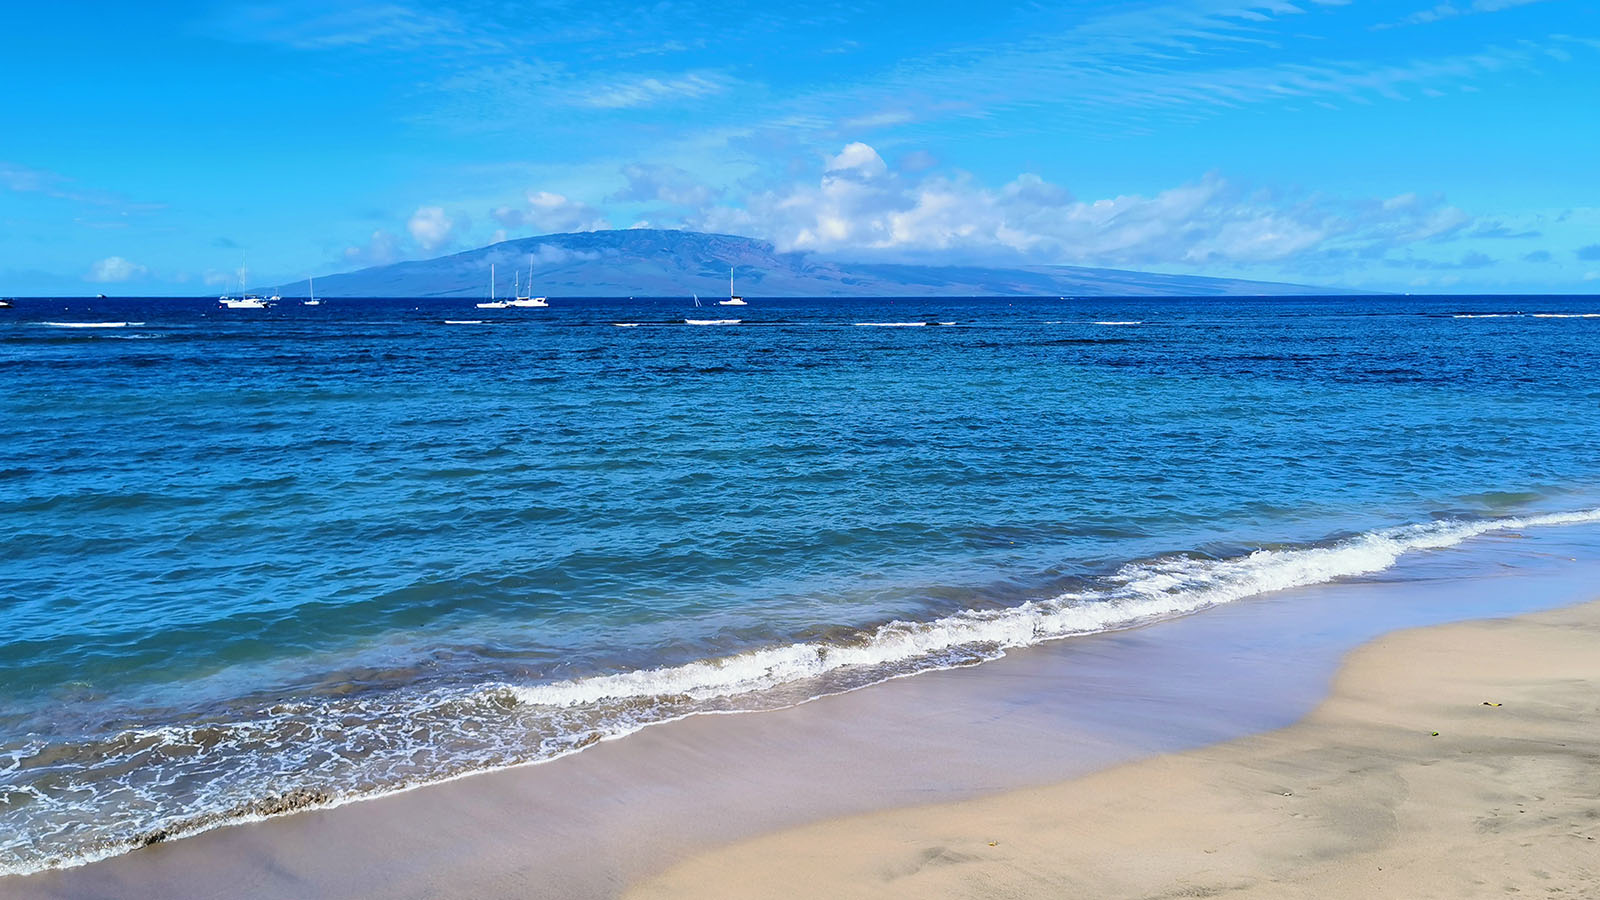 Beautiful water and beach in Hawaii